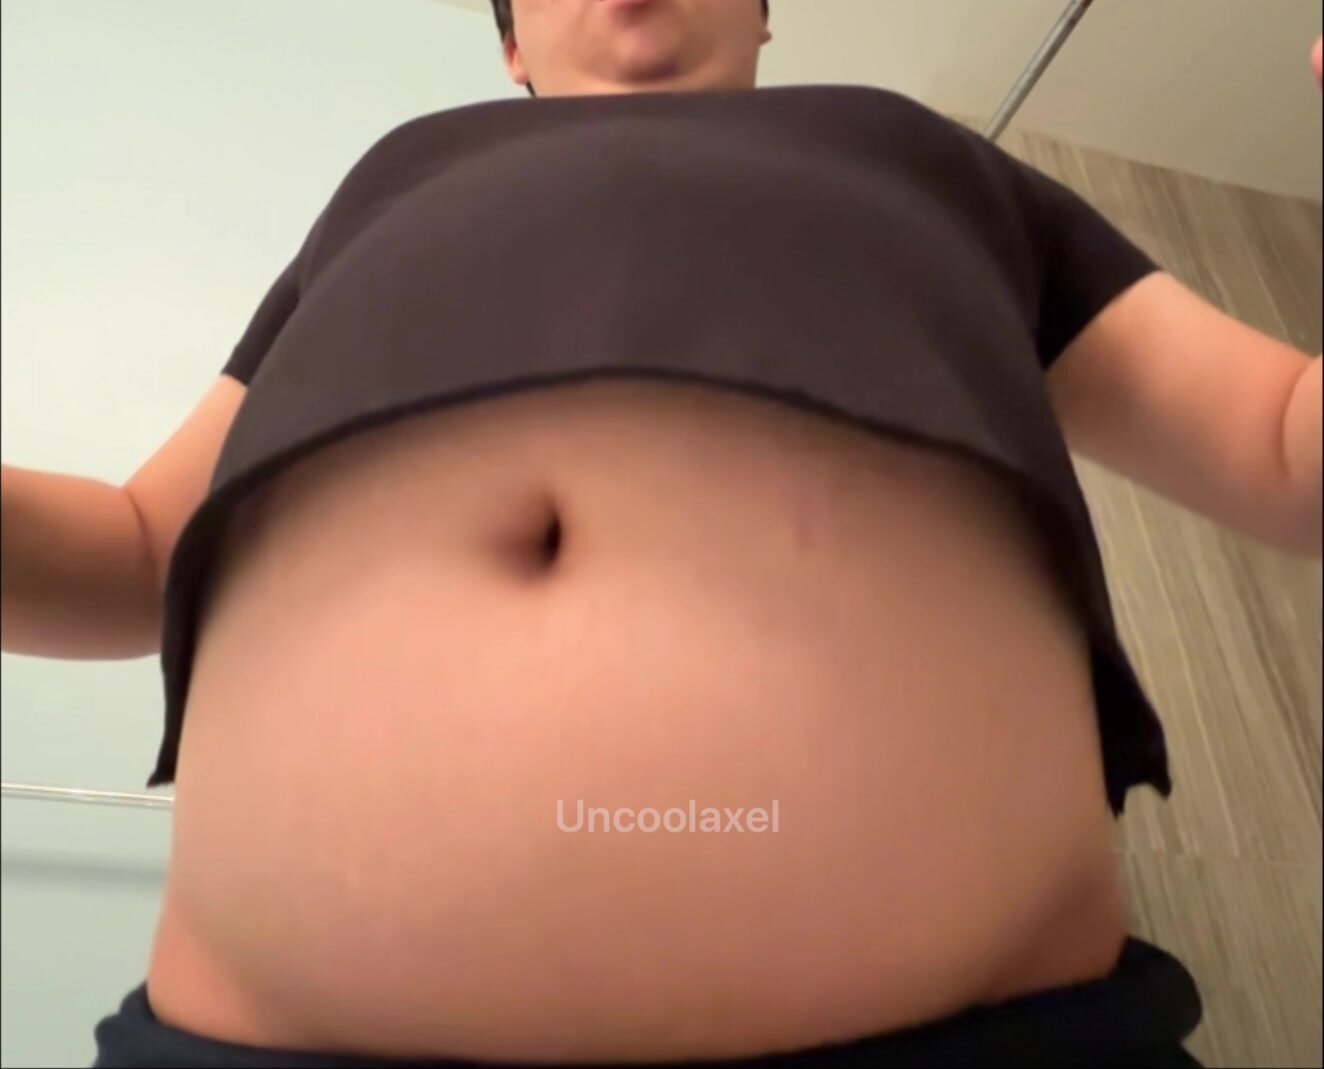 Male rapid belly bloat